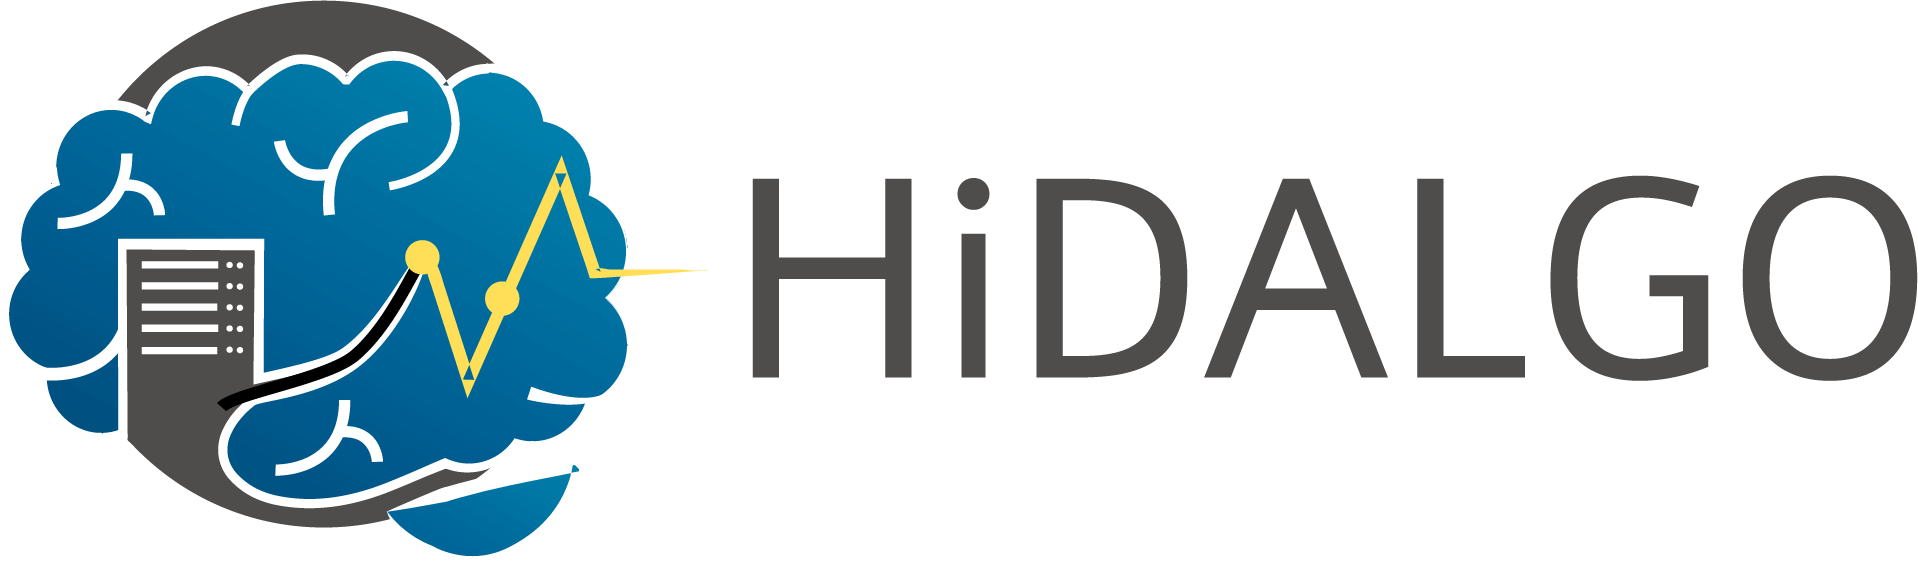 Atos Logo - ATOS | HiDALGO